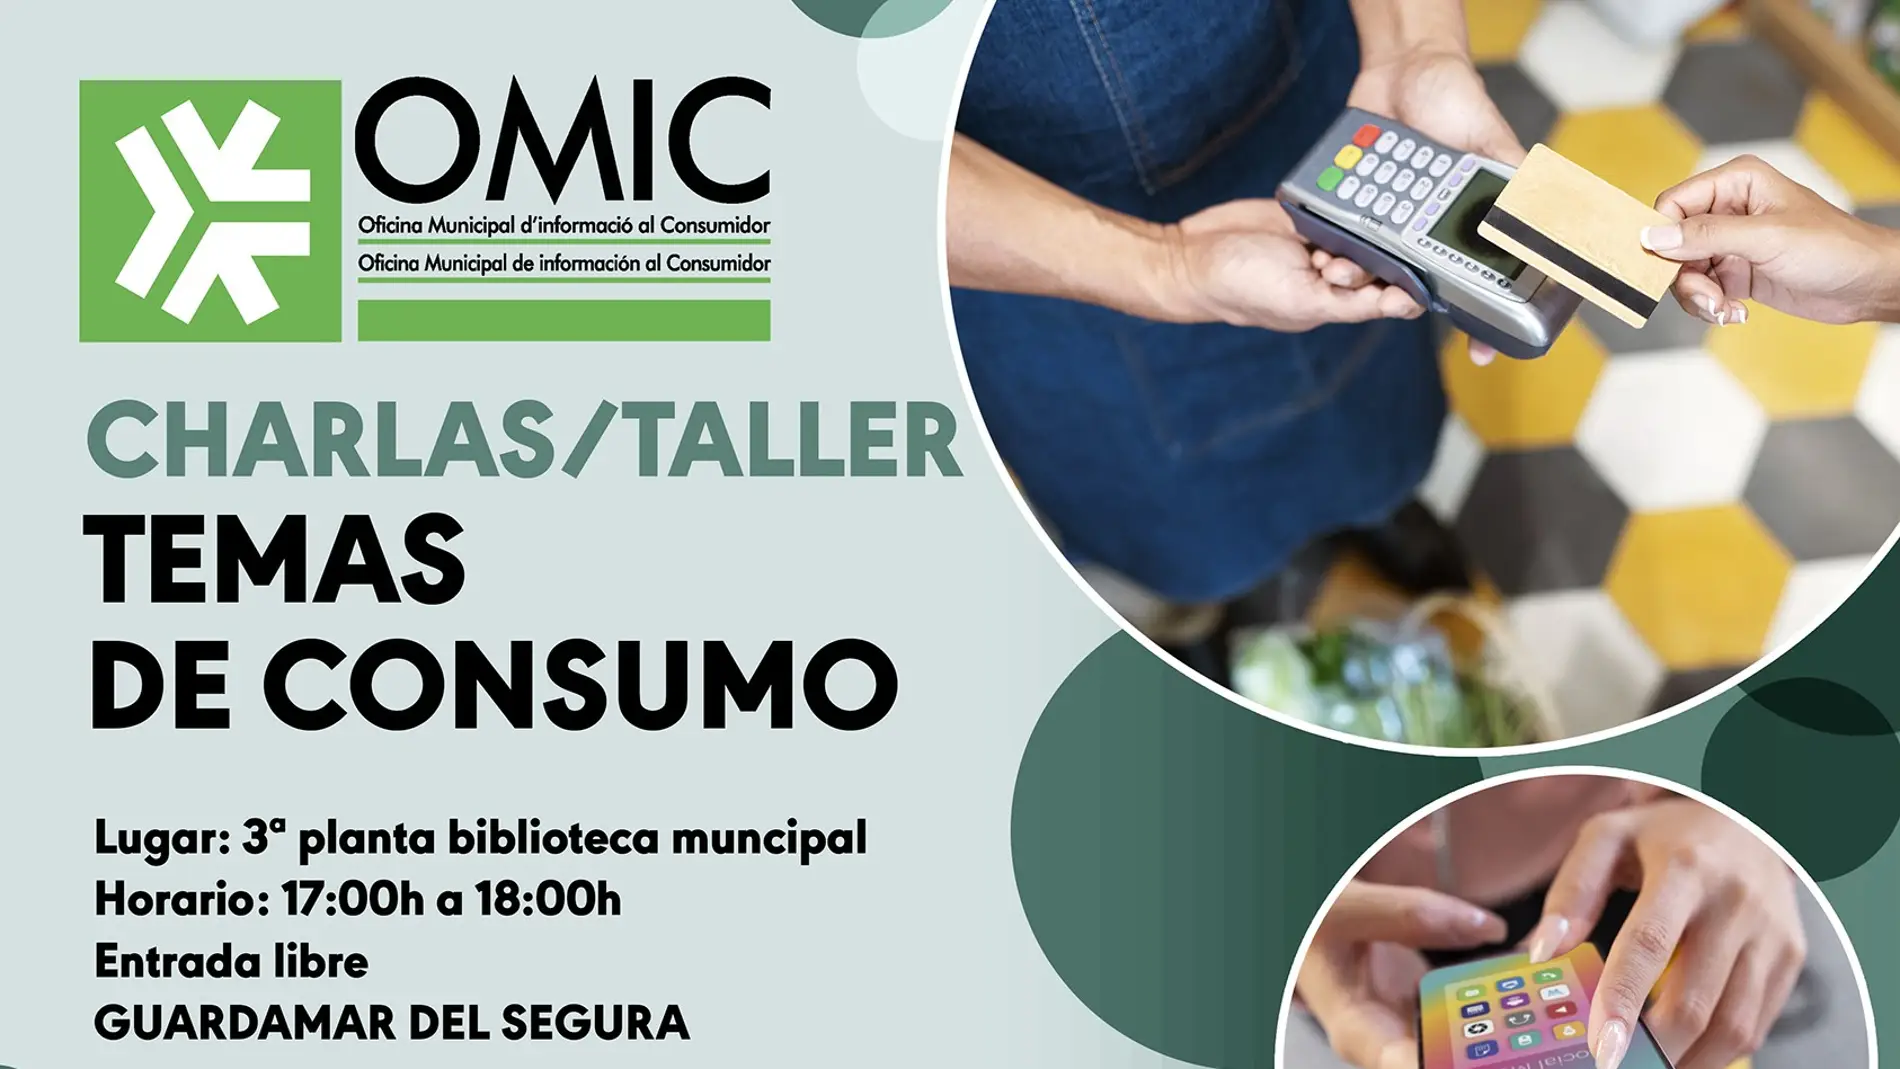 Guardamar del Segura organiza y la Omic organiza charlas sobre "Taller de consumo" 